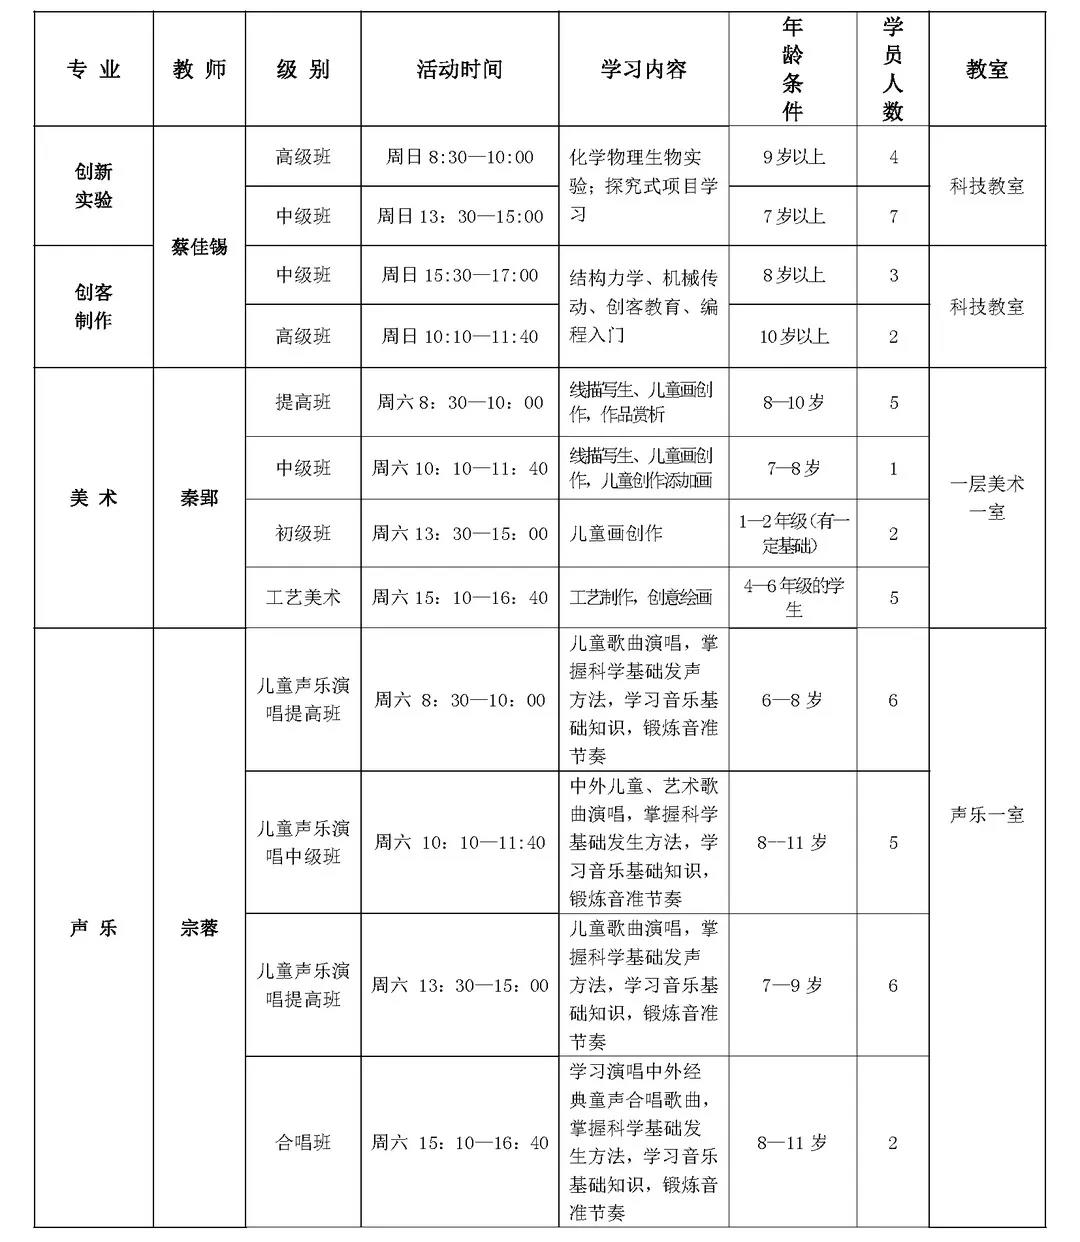 西城德胜少年宫2019年秋季插班生课程表1